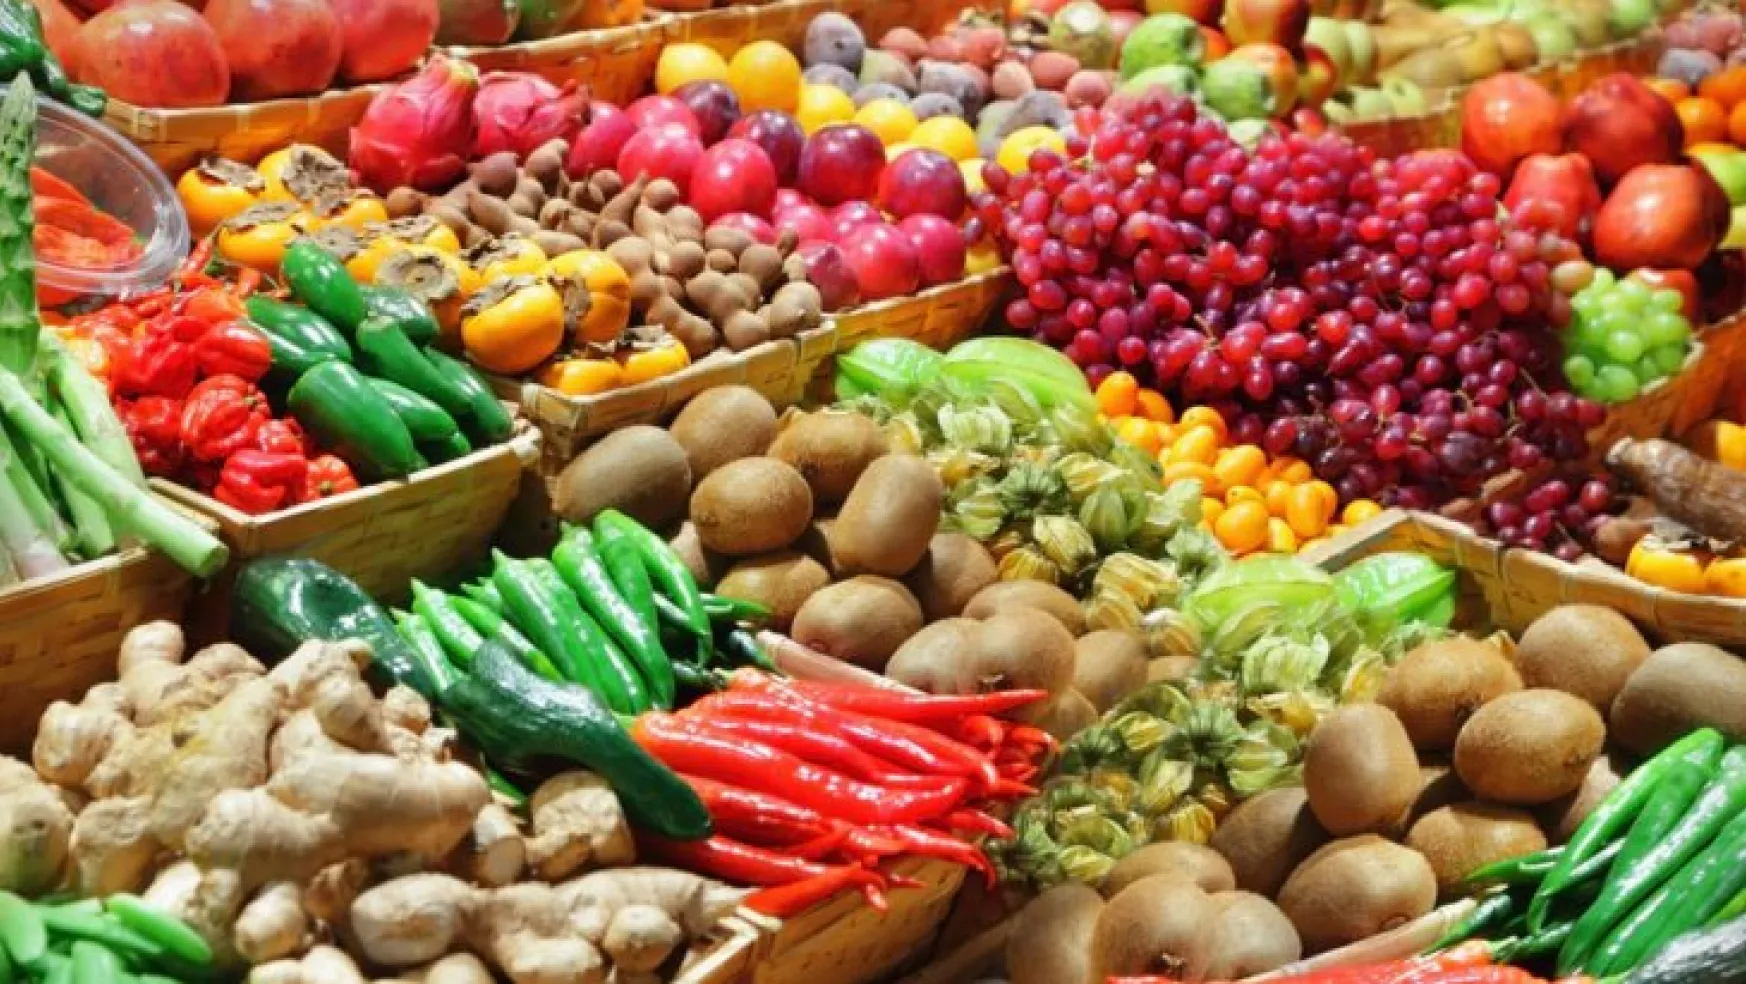 Ramazan'da sebze ve meyve fiyatları uçacak!